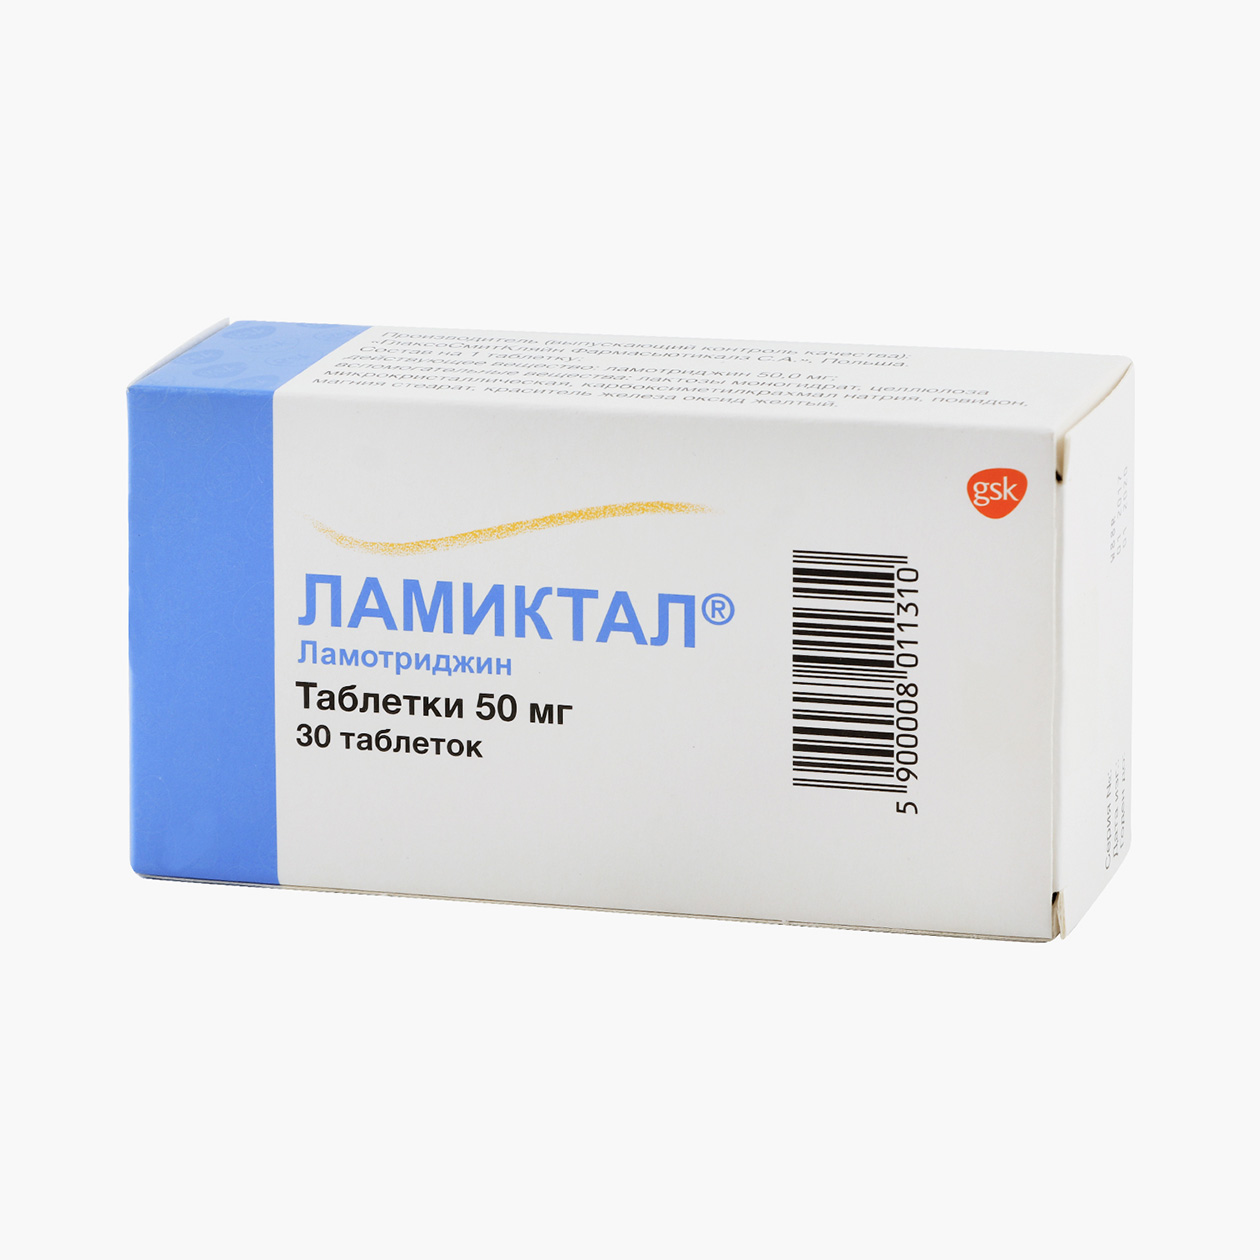 Цена препарата зависит как от количества действующего вещества и таблеток в упаковке, так и от ценовой политики производителя. Упаковка 30 таблеток в минимальной дозировке 25 мг стоит от 720 ₽. Источник: eapteka.ru